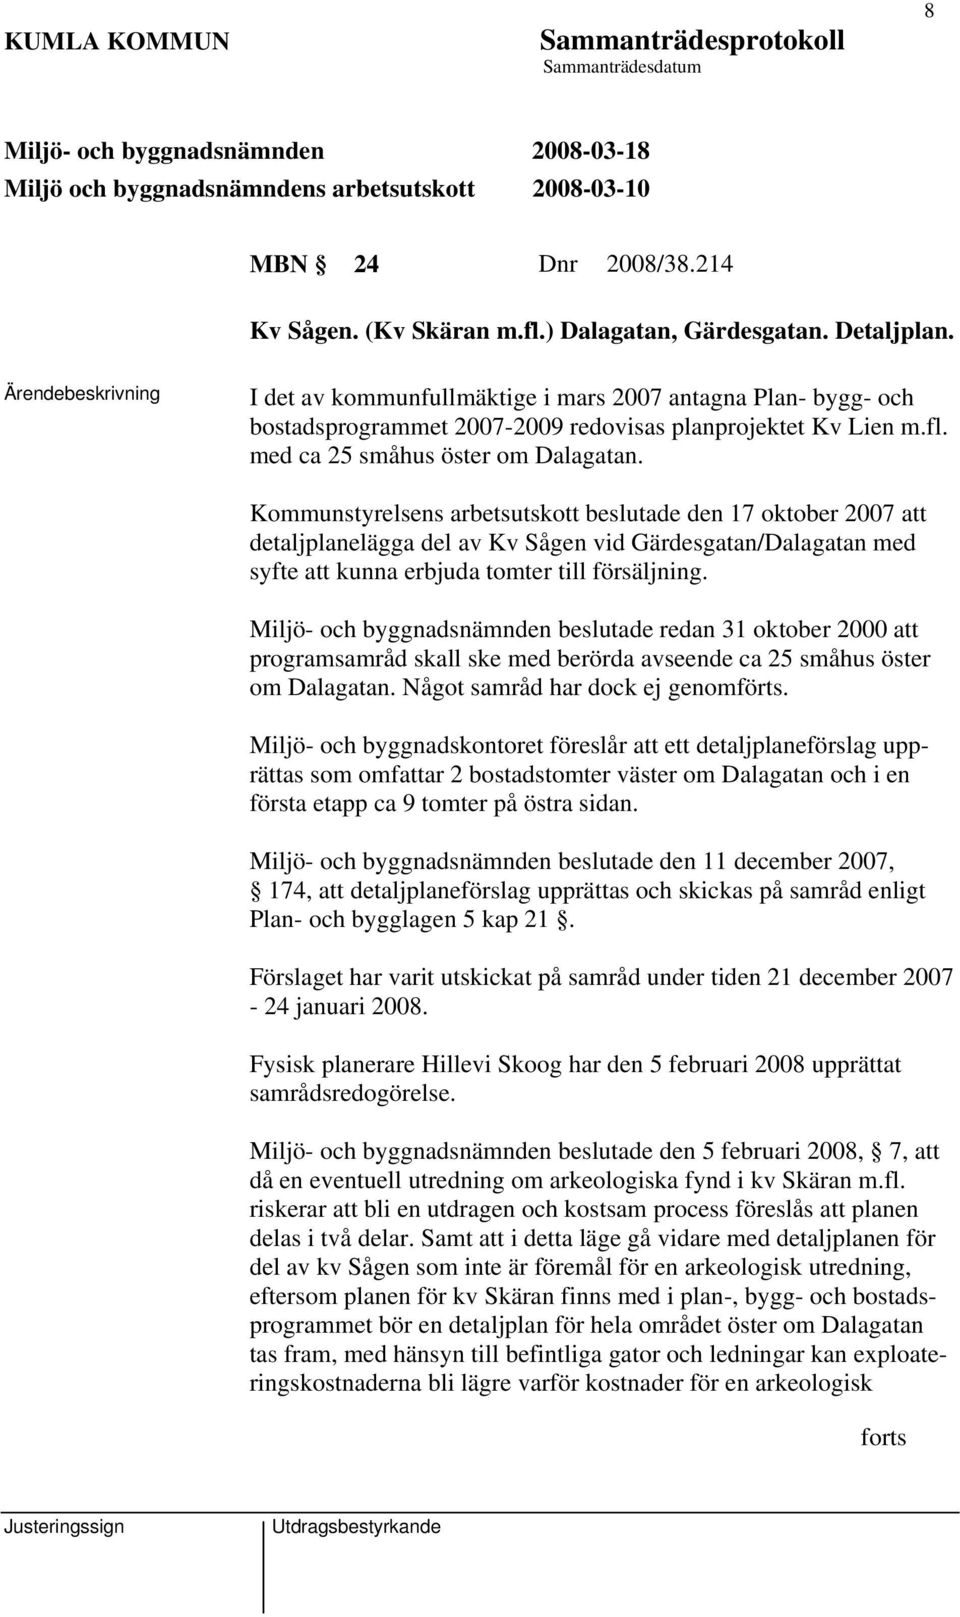 Kommunstyrelsens arbetsutskott ade den 17 oktober 2007 att detaljplanelägga del av Kv Sågen vid Gärdesgatan/Dalagatan med syfte att kunna erbjuda tomter till försäljning.